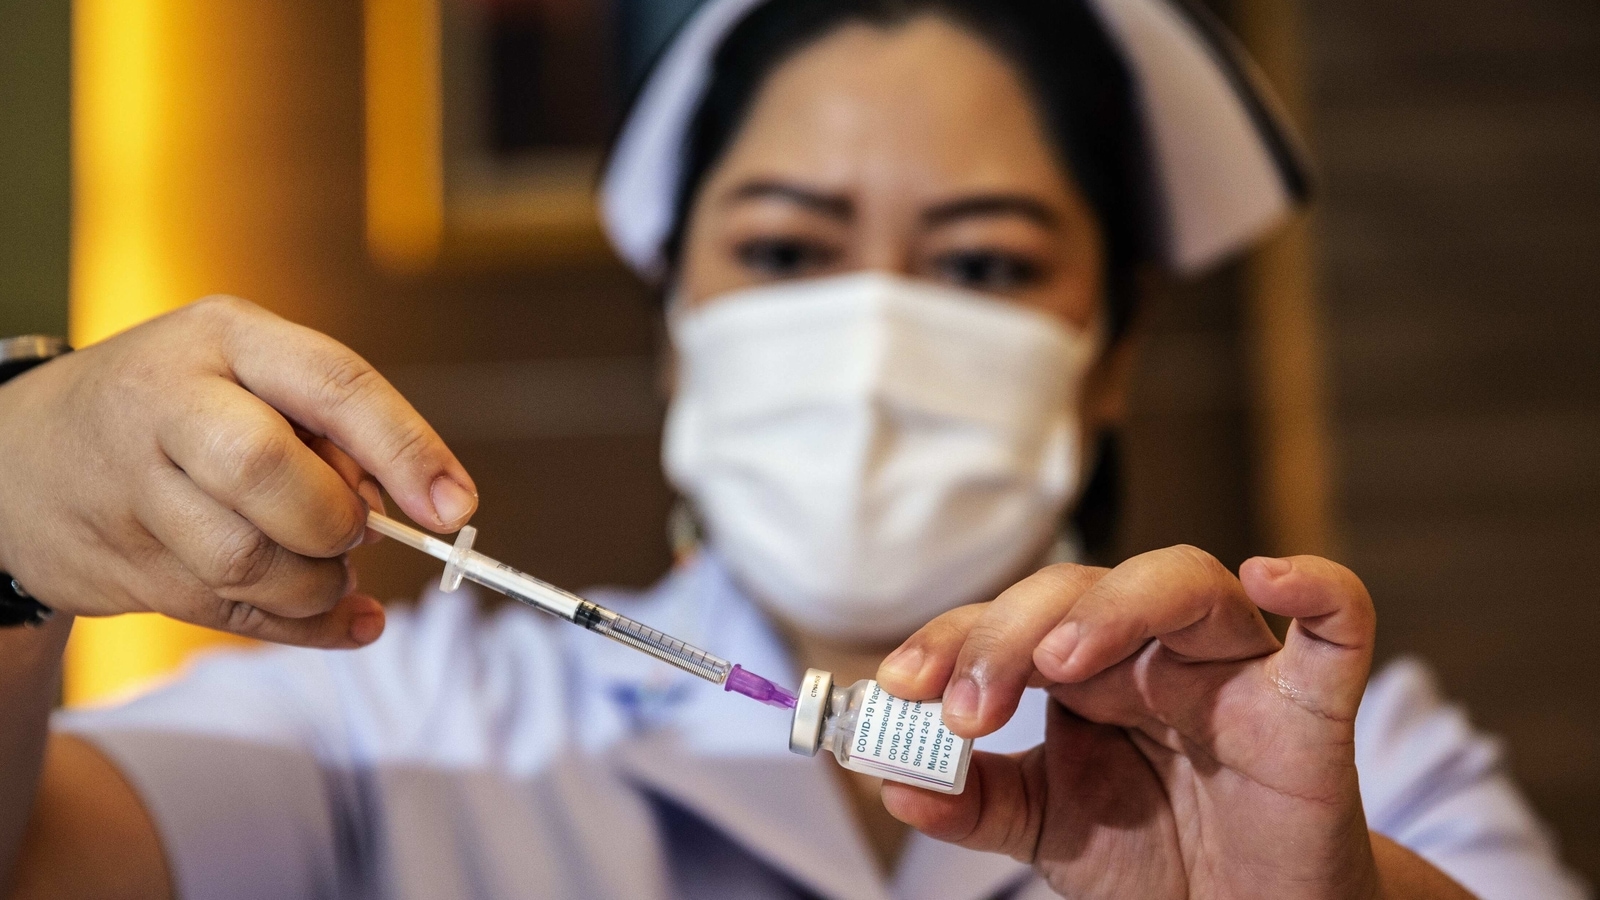 Demo emlash uz. Вакцинация в Кыргызстане. Тайланд, прививки. Тайланд вакцина. Эмлаш.